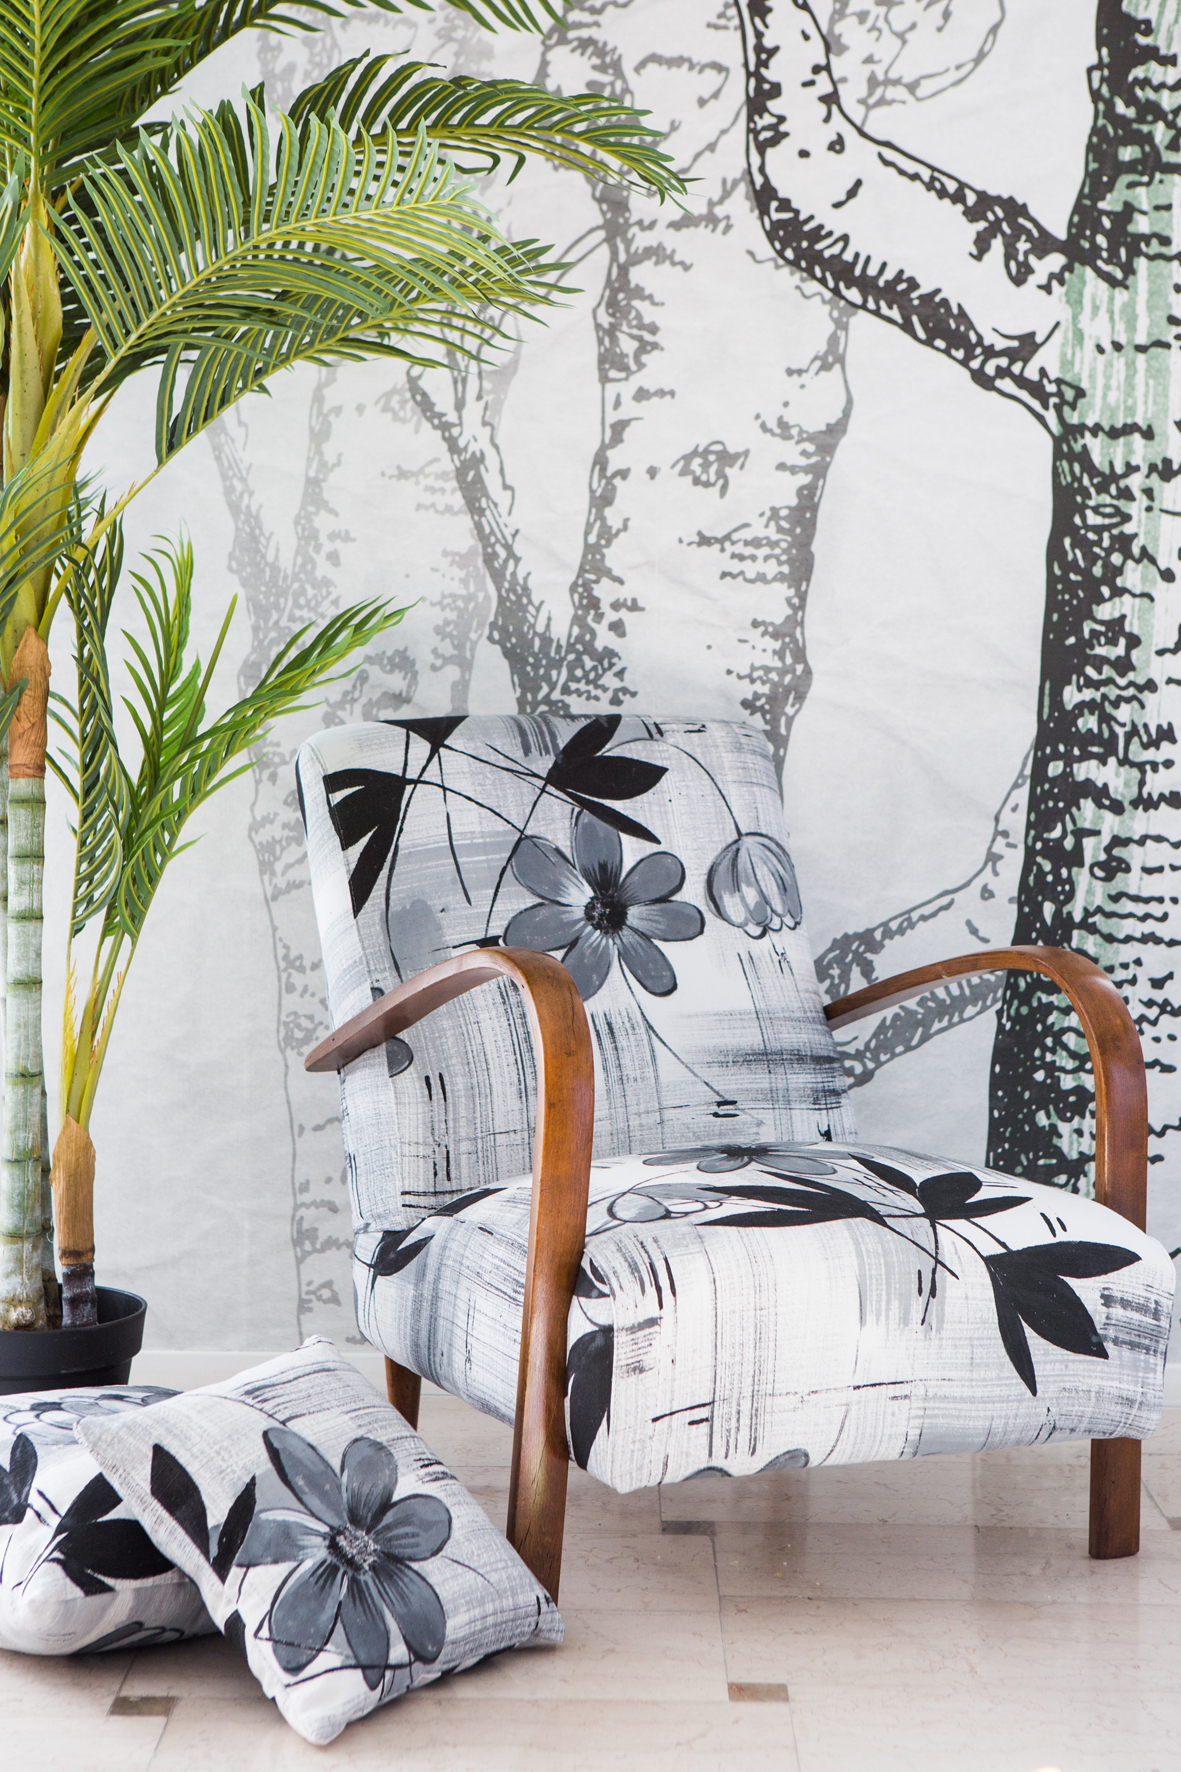 Sedia fatta con tessuto con disegno artistico di fiori bianco e nero con sfondo con alberi disegnati e piante